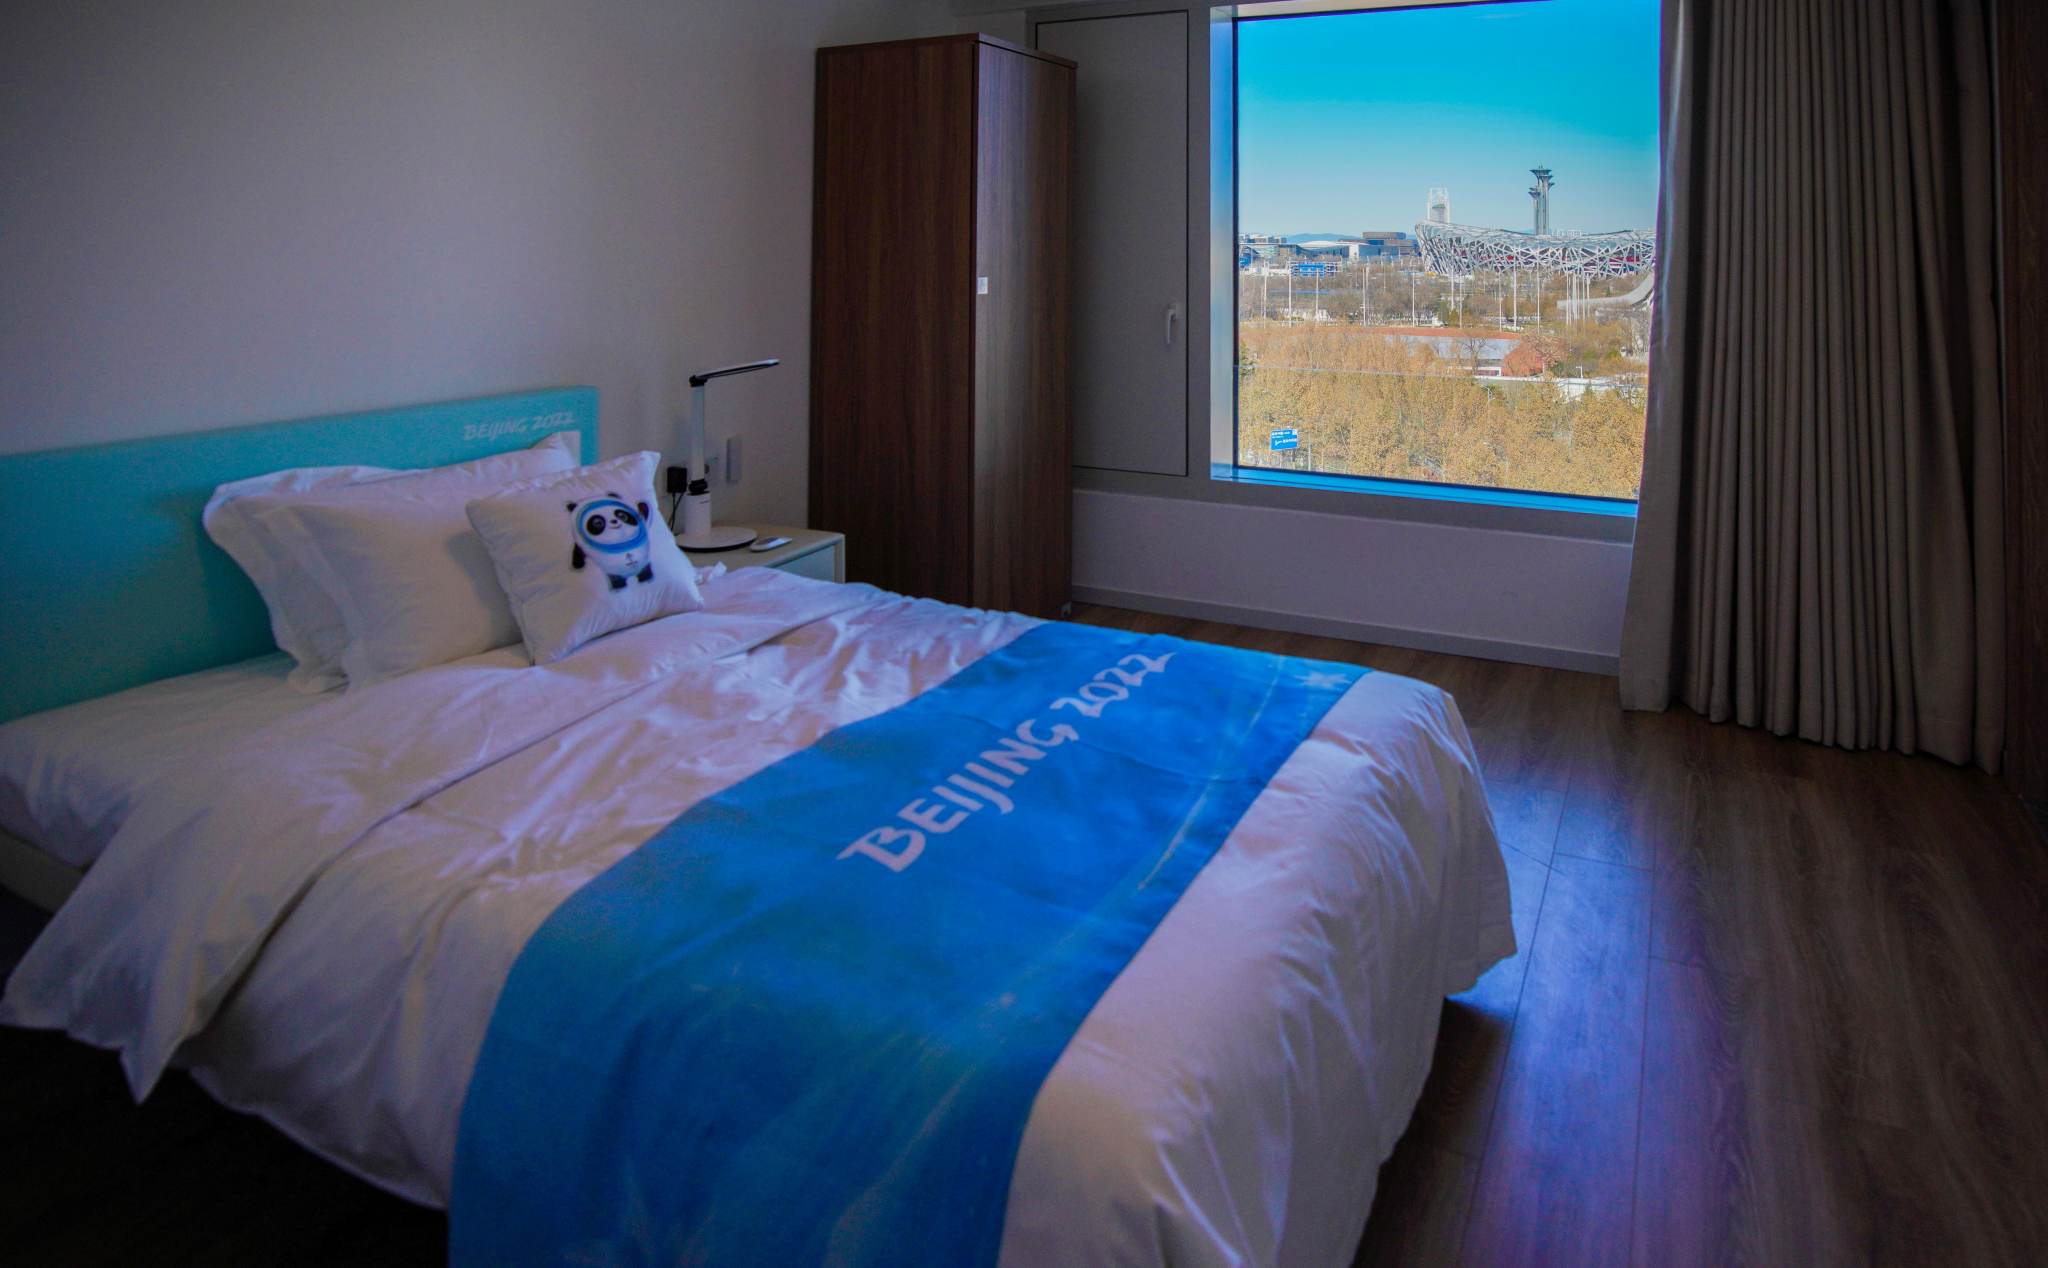 Giường nghỉ tại Olympic mùa đông Bắc Kinh sẽ có chế độ không trọng lực và điều khiển từ xa